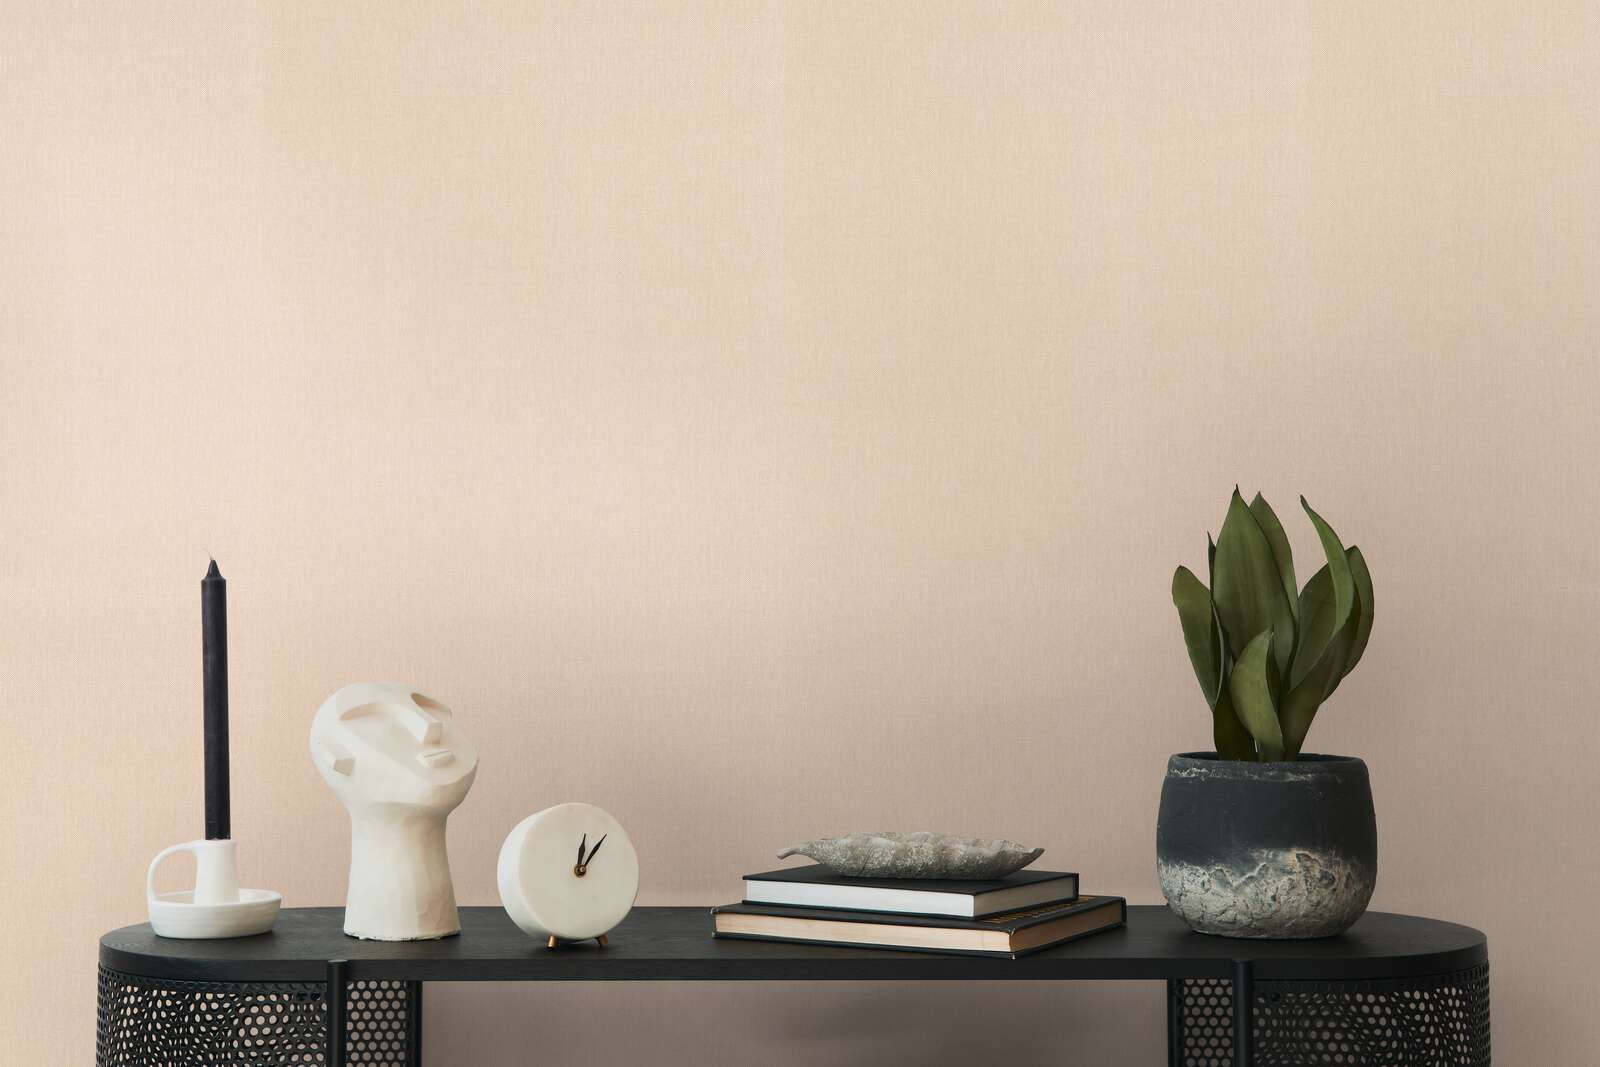             Papel pintado liso beige con estructura textil de estilo rústico
        